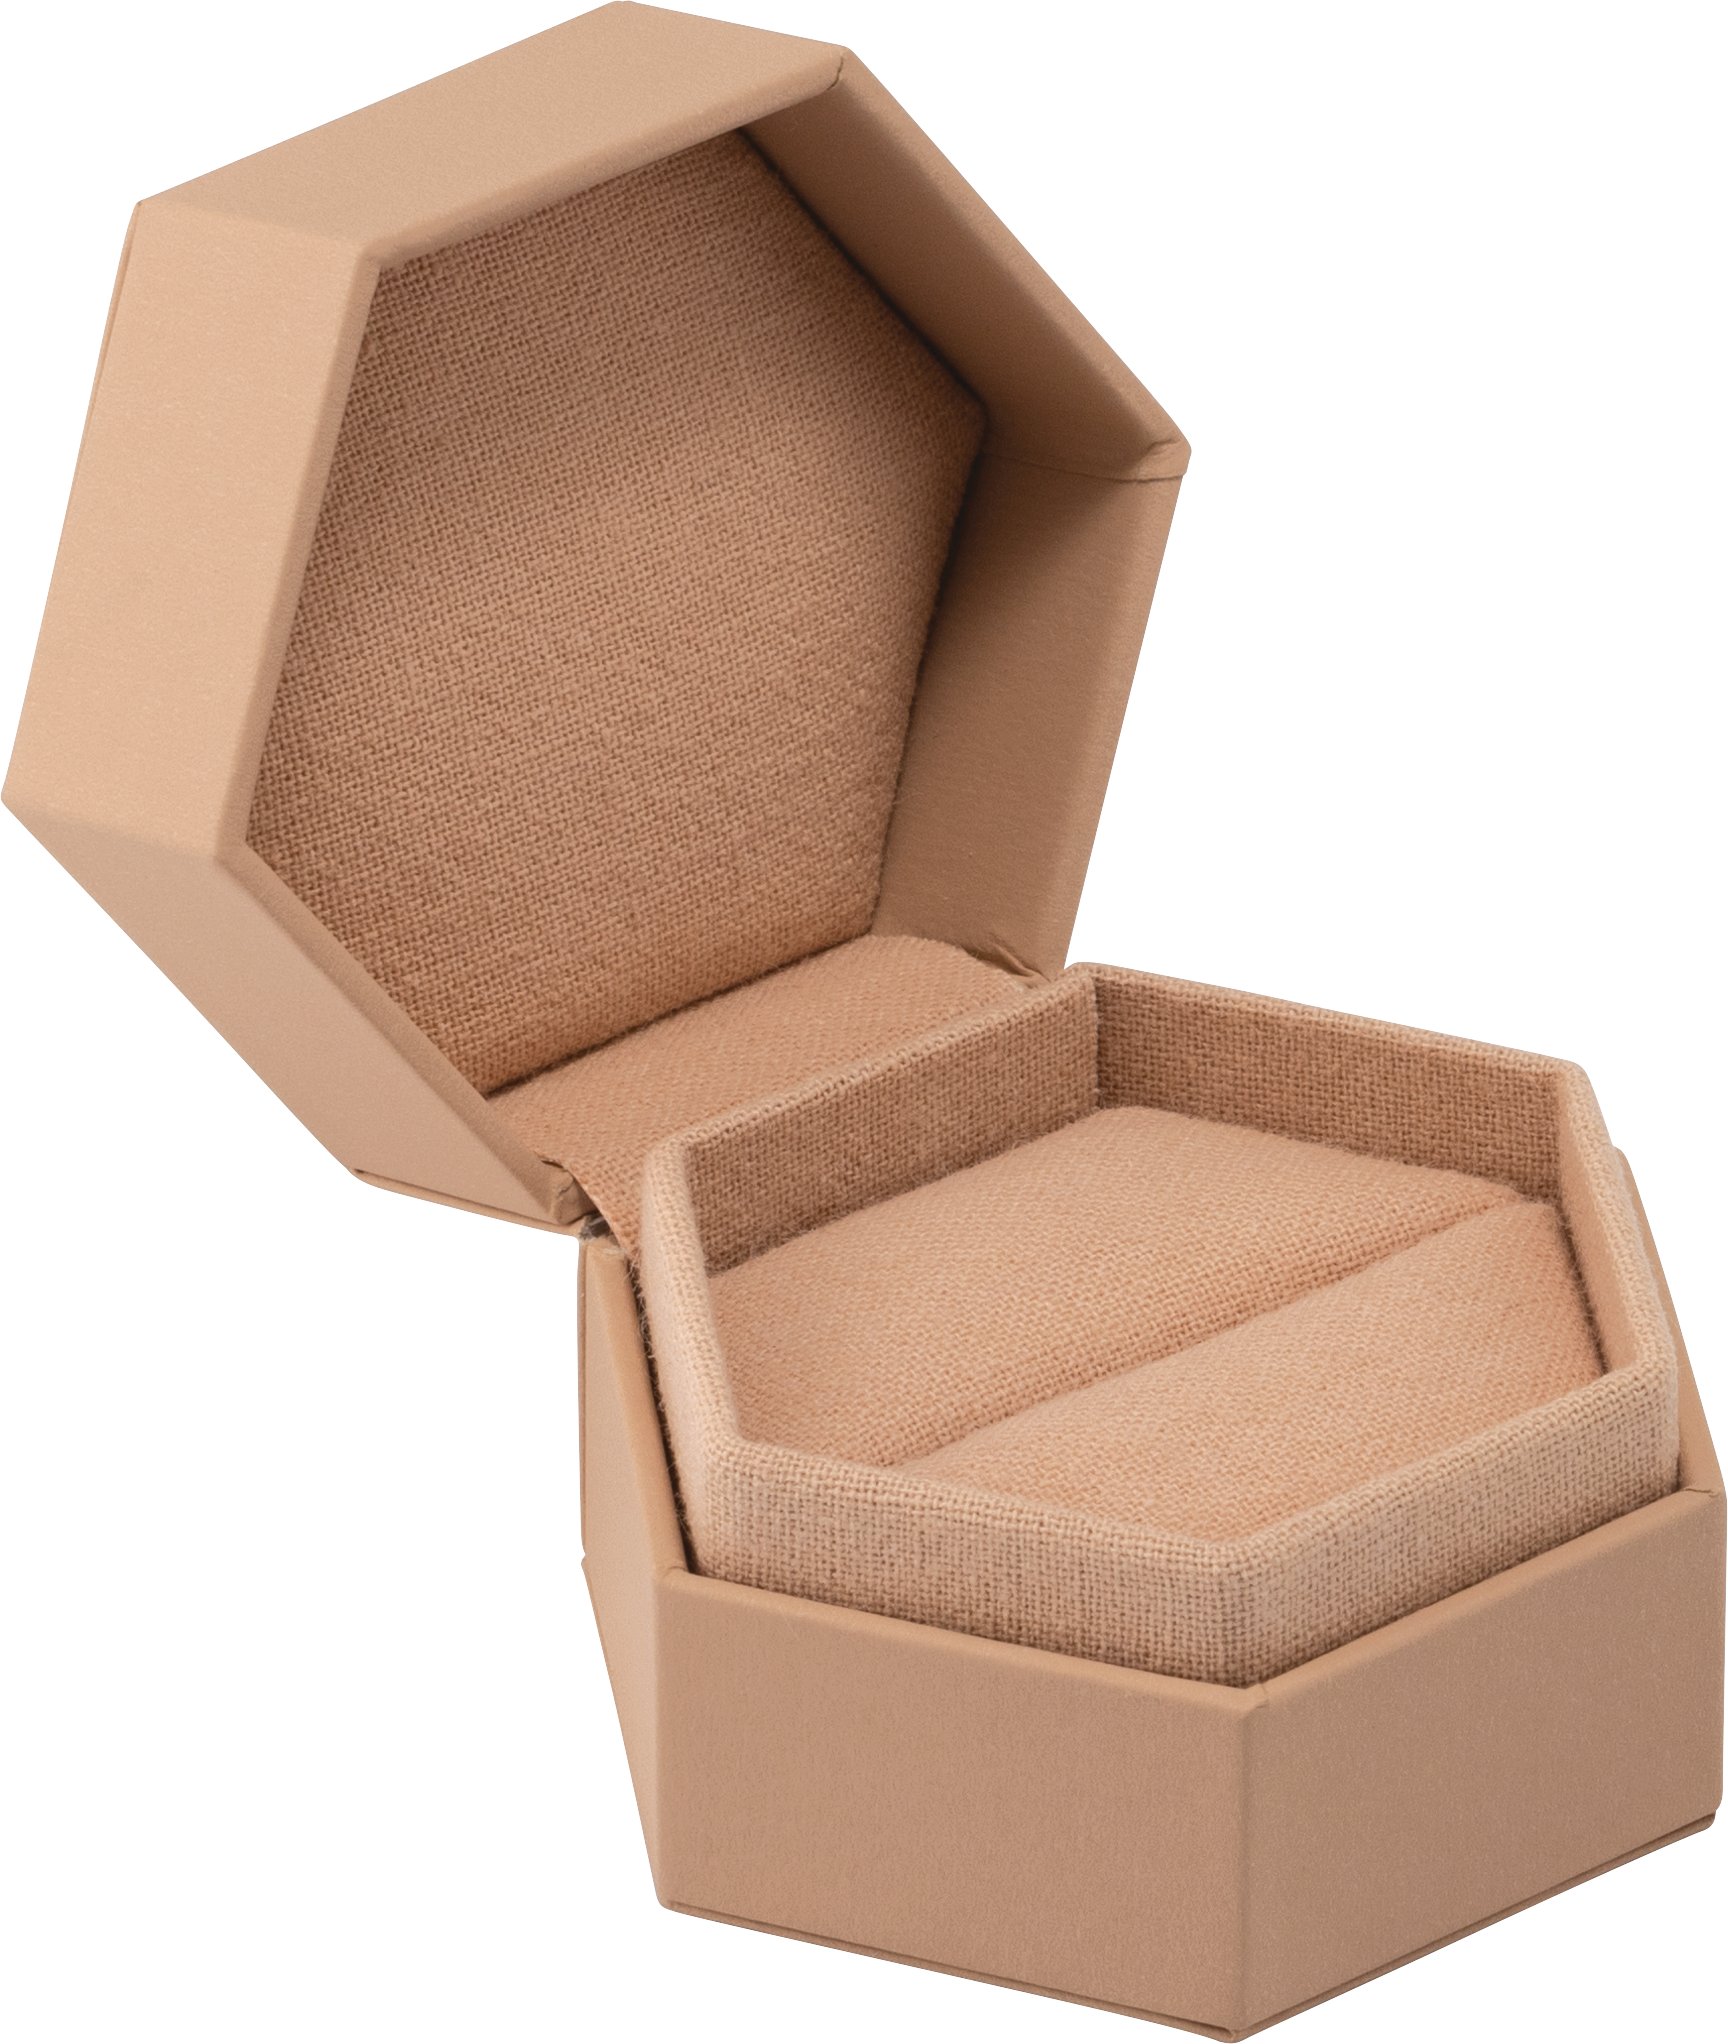 Tan Matte Paper Single Ring Box